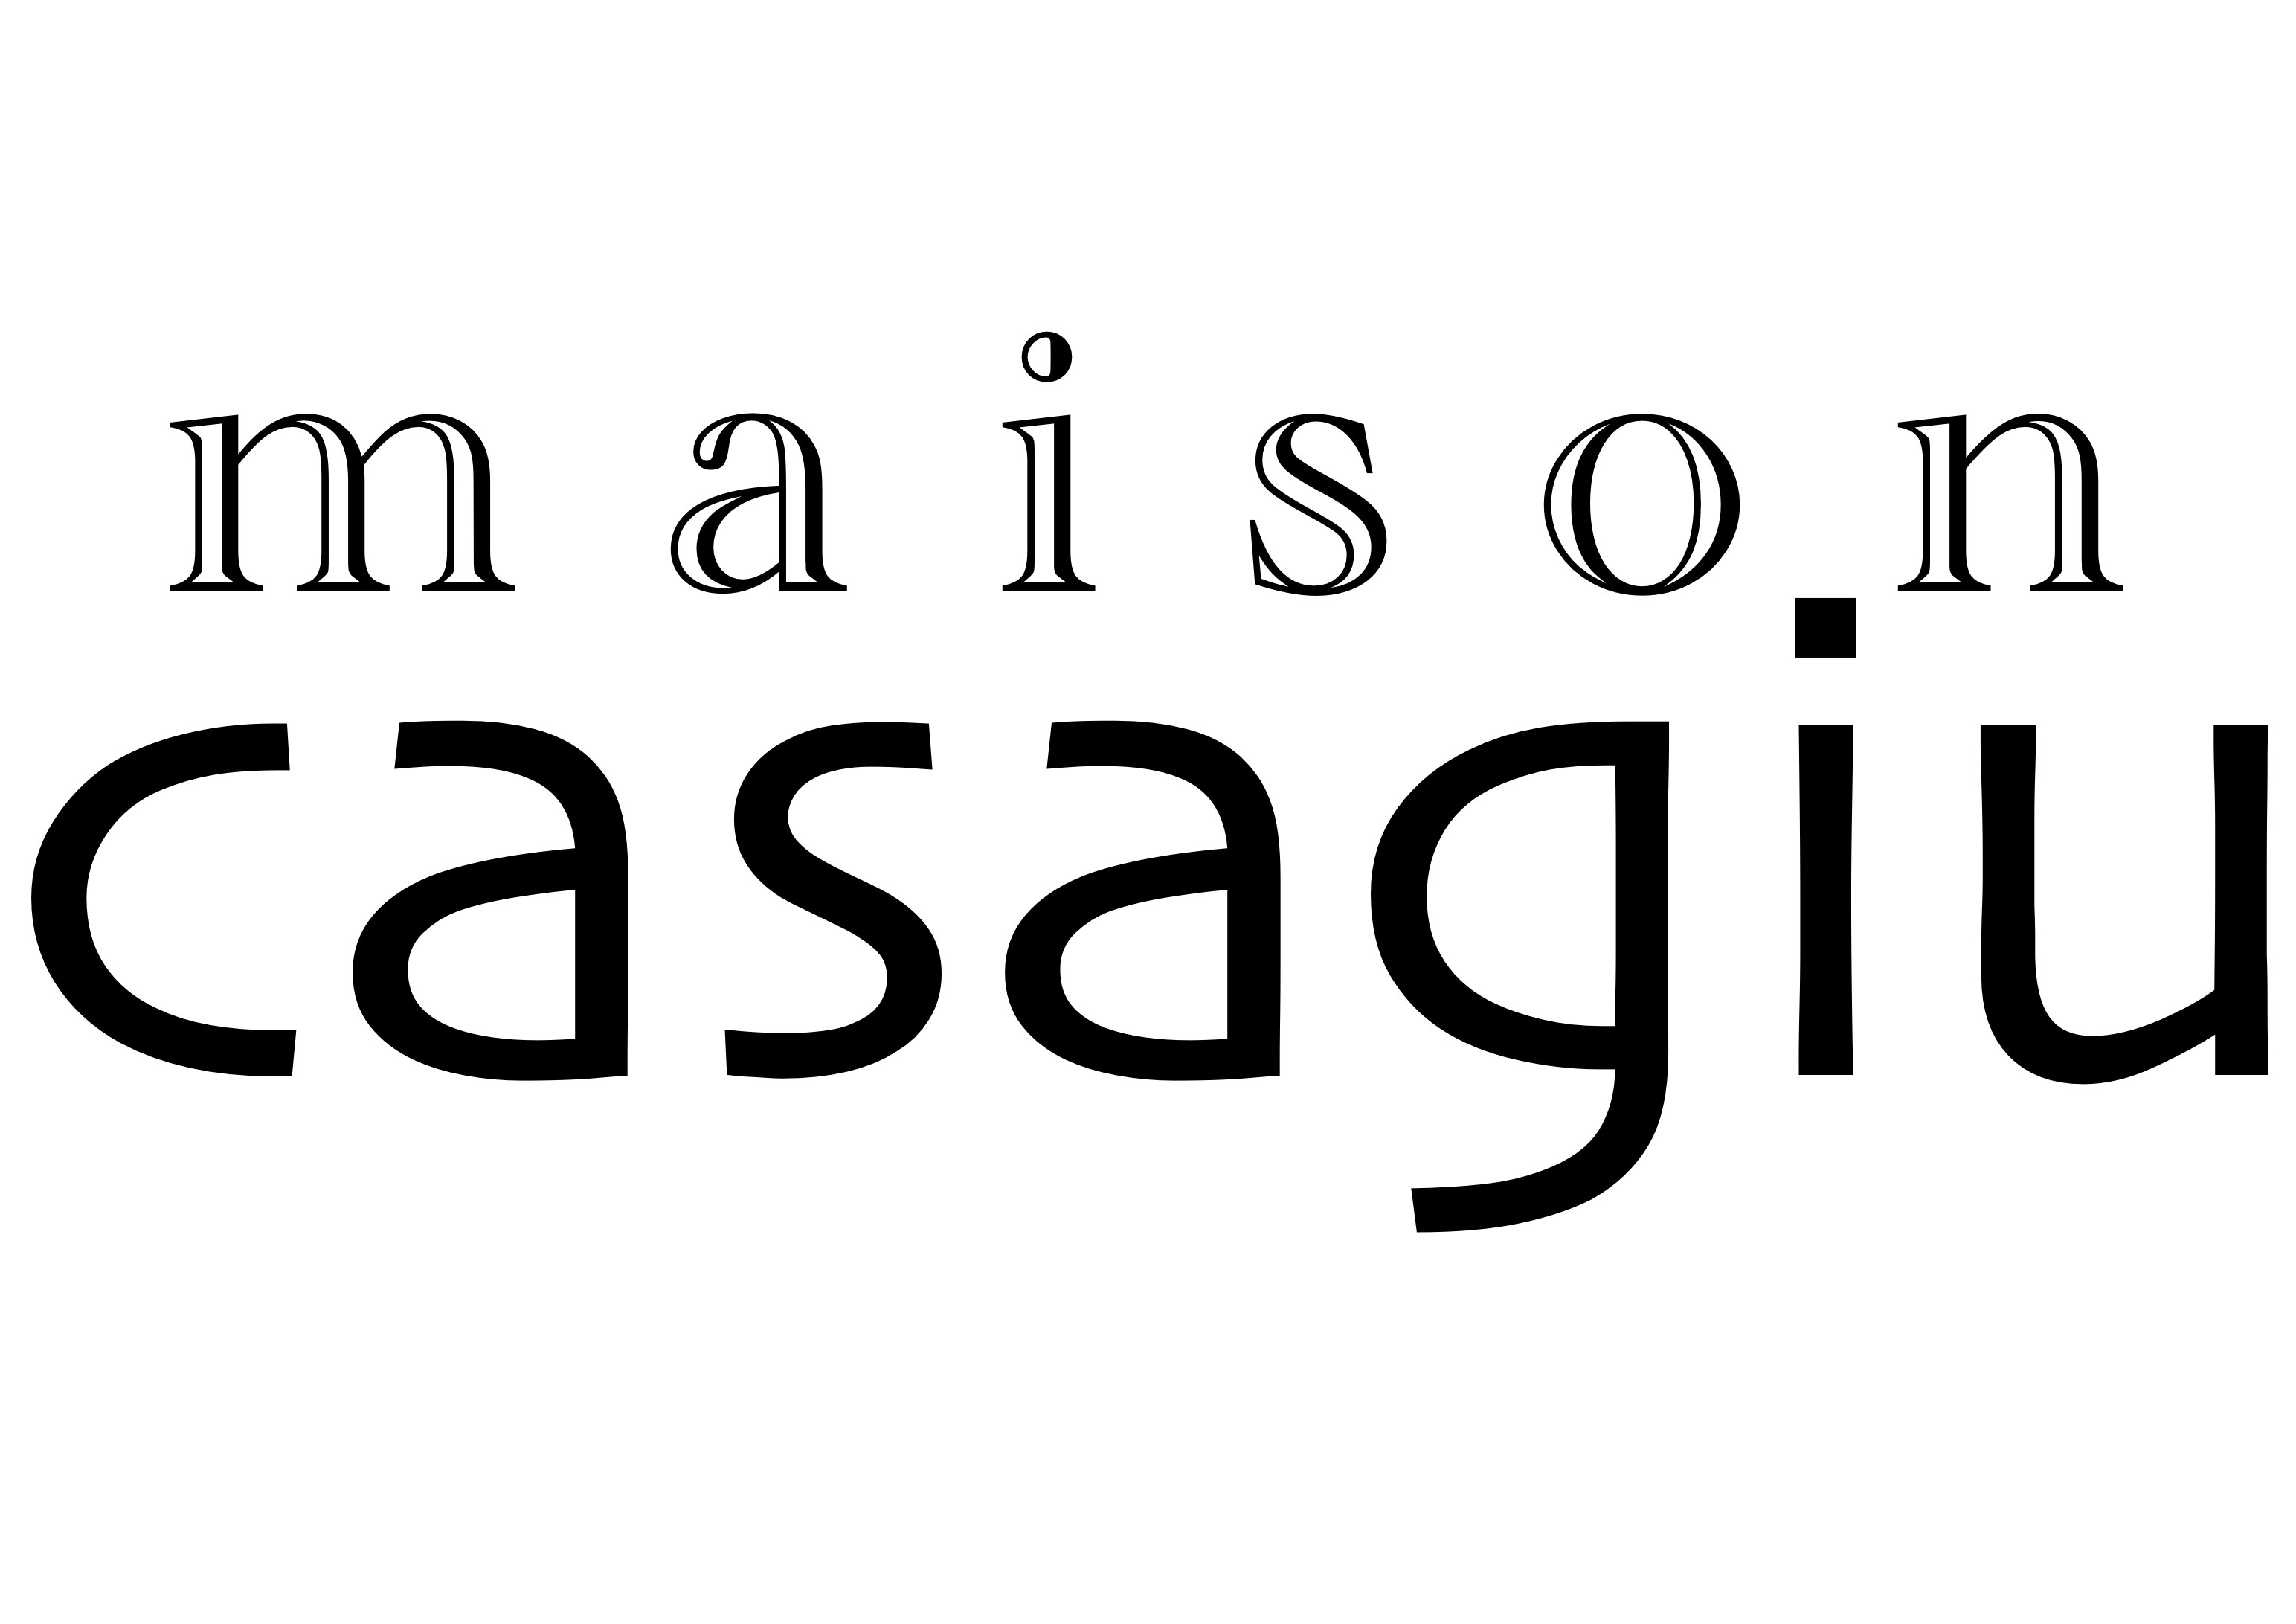 Maison Casagiu